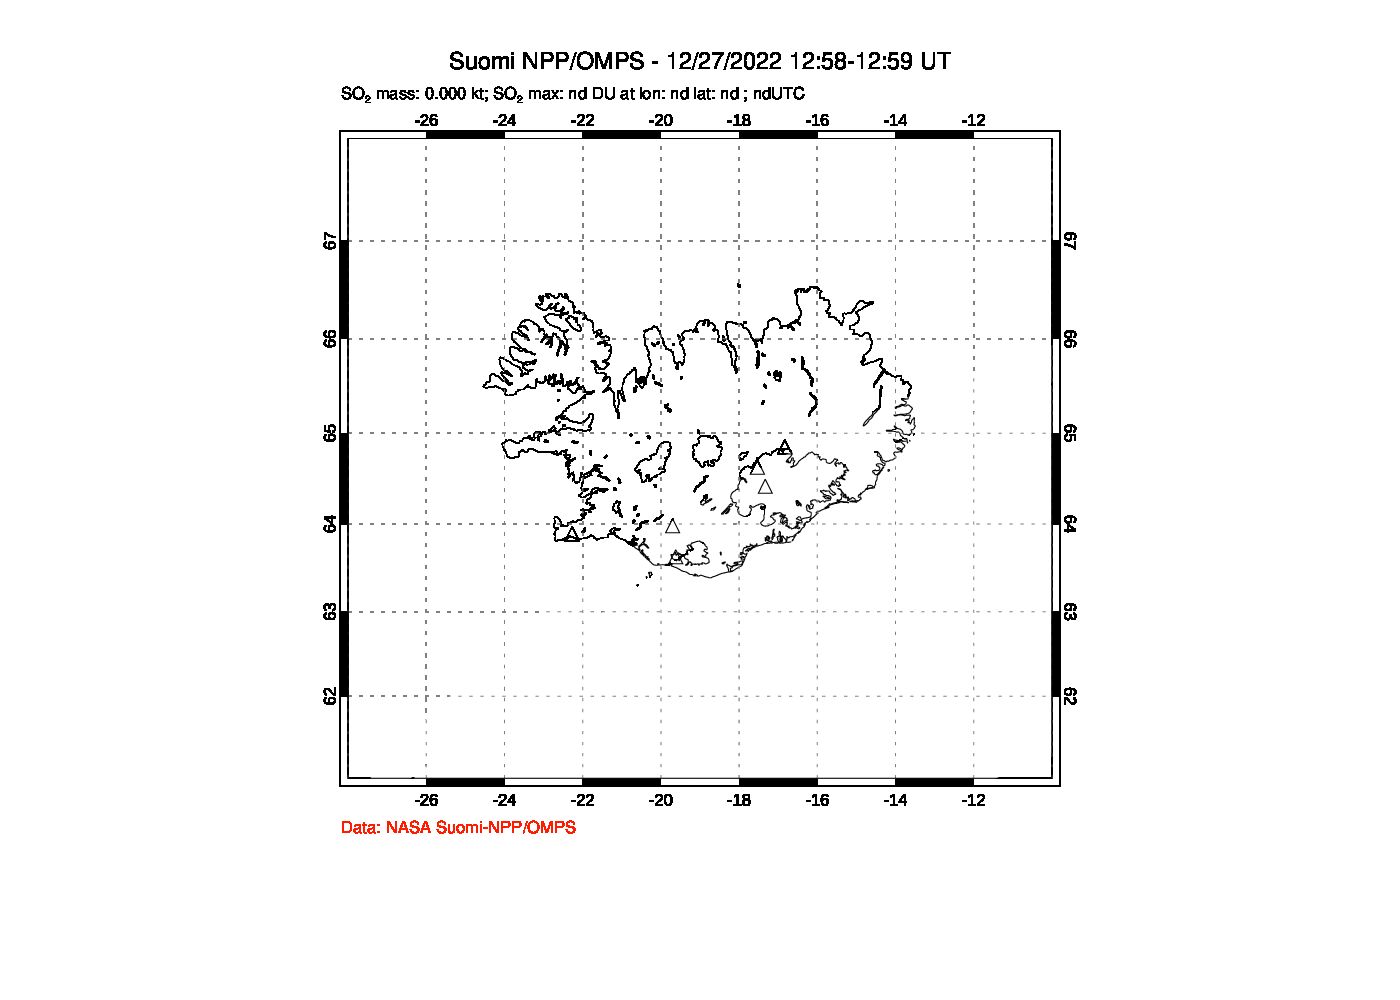 A sulfur dioxide image over Iceland on Dec 27, 2022.